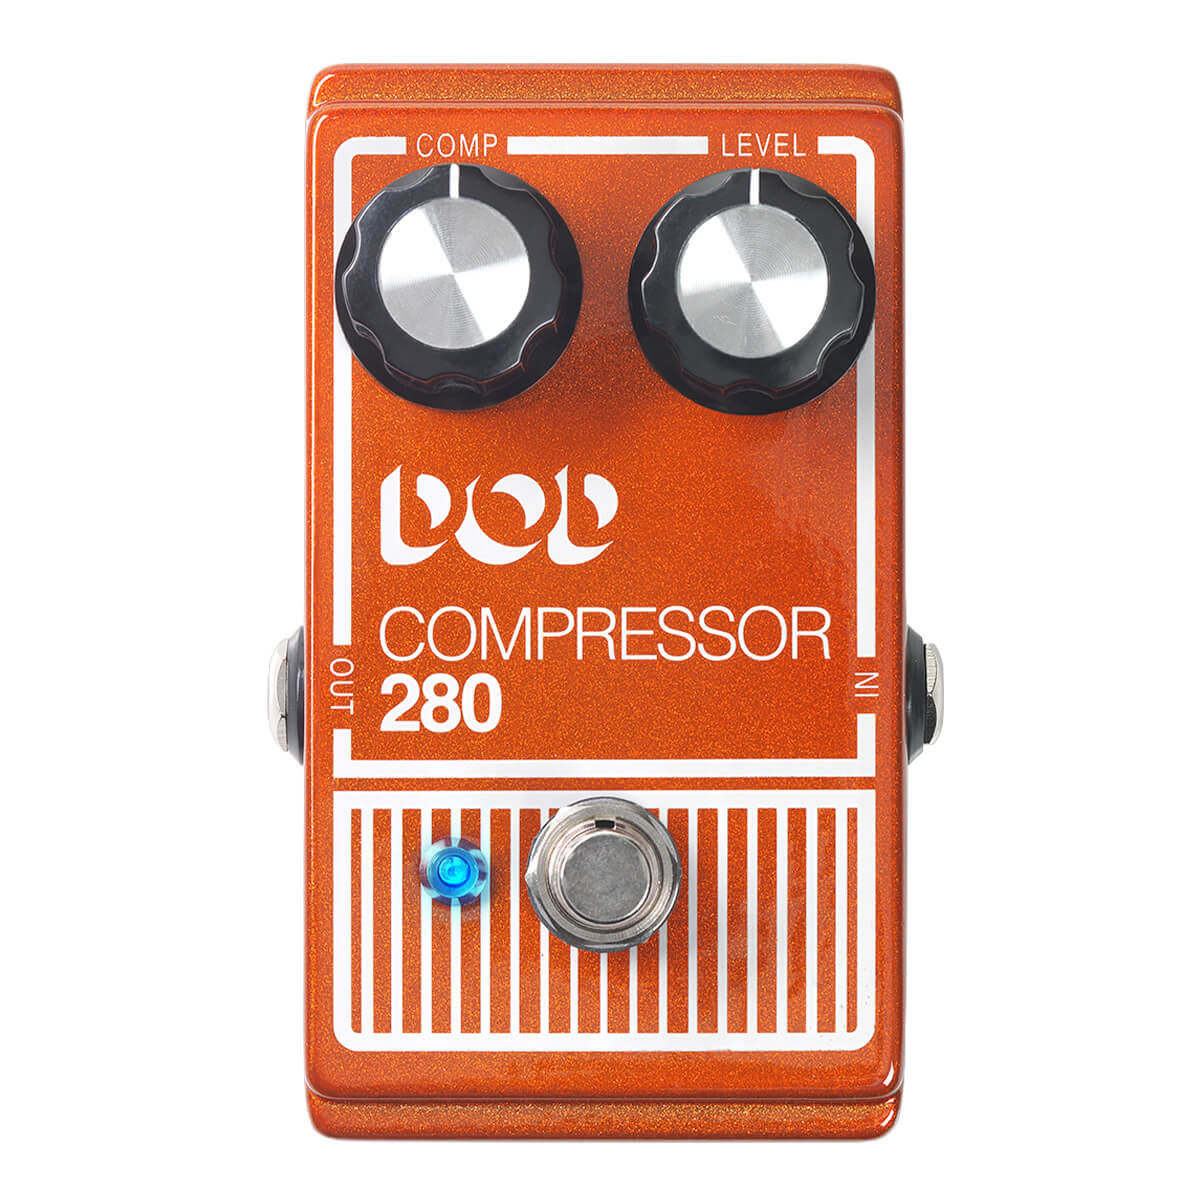 Dod Compressor 280 Compressor Pedal For Guitar & Bass